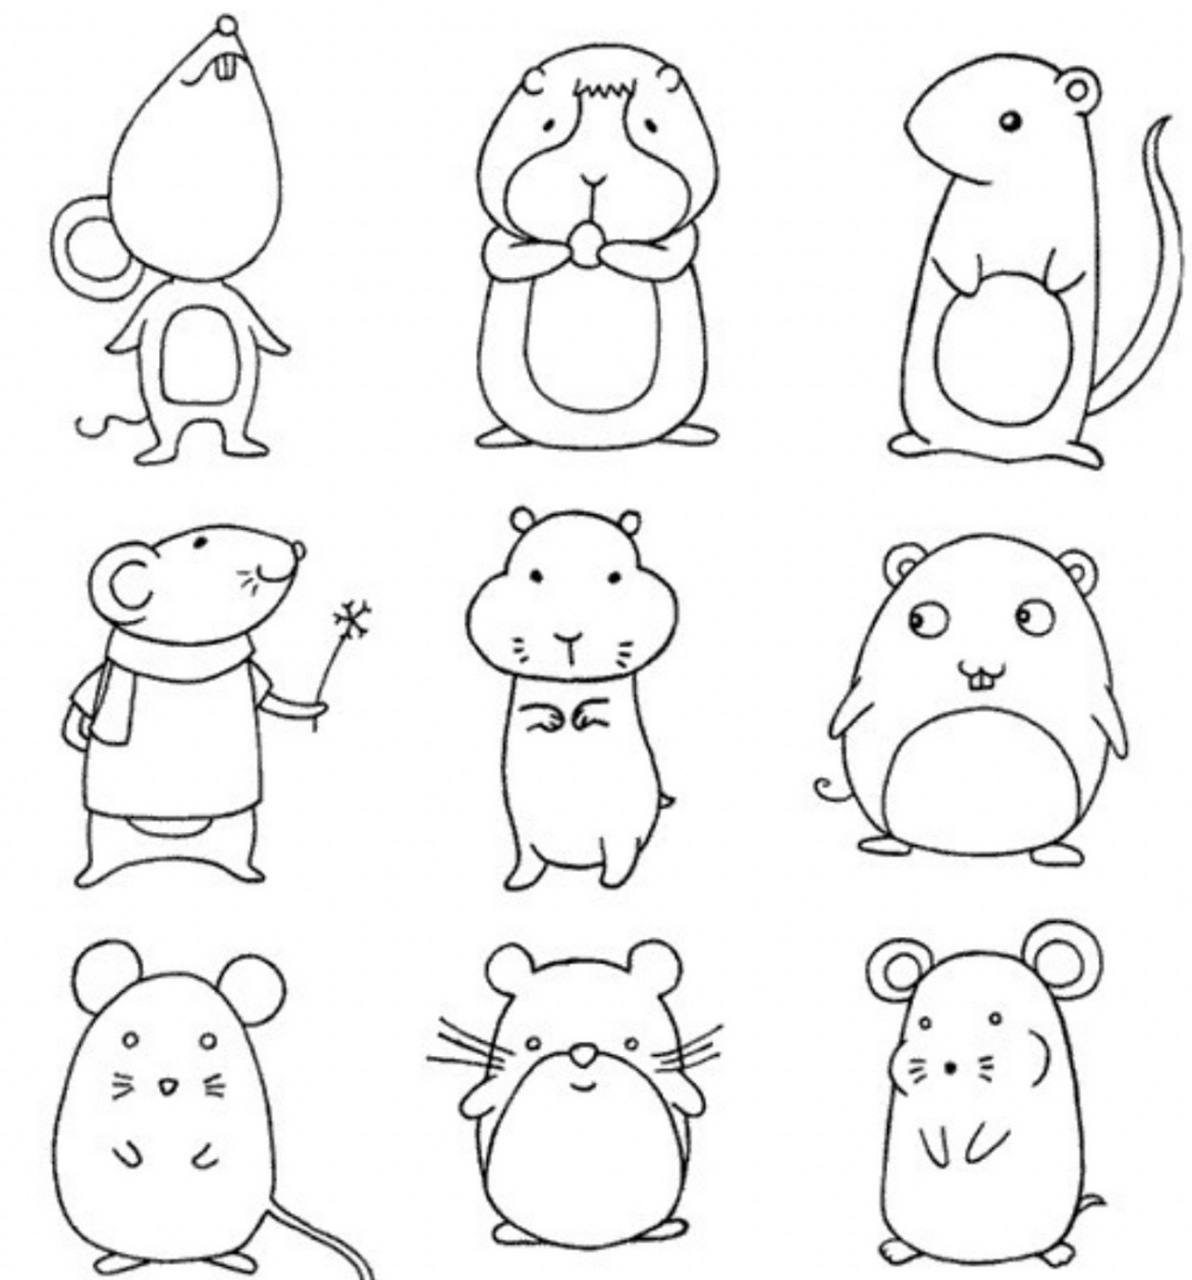 小老鼠简笔画来啦 各种不同造型的,宝贝们去选吧,打算出个十二生肖的